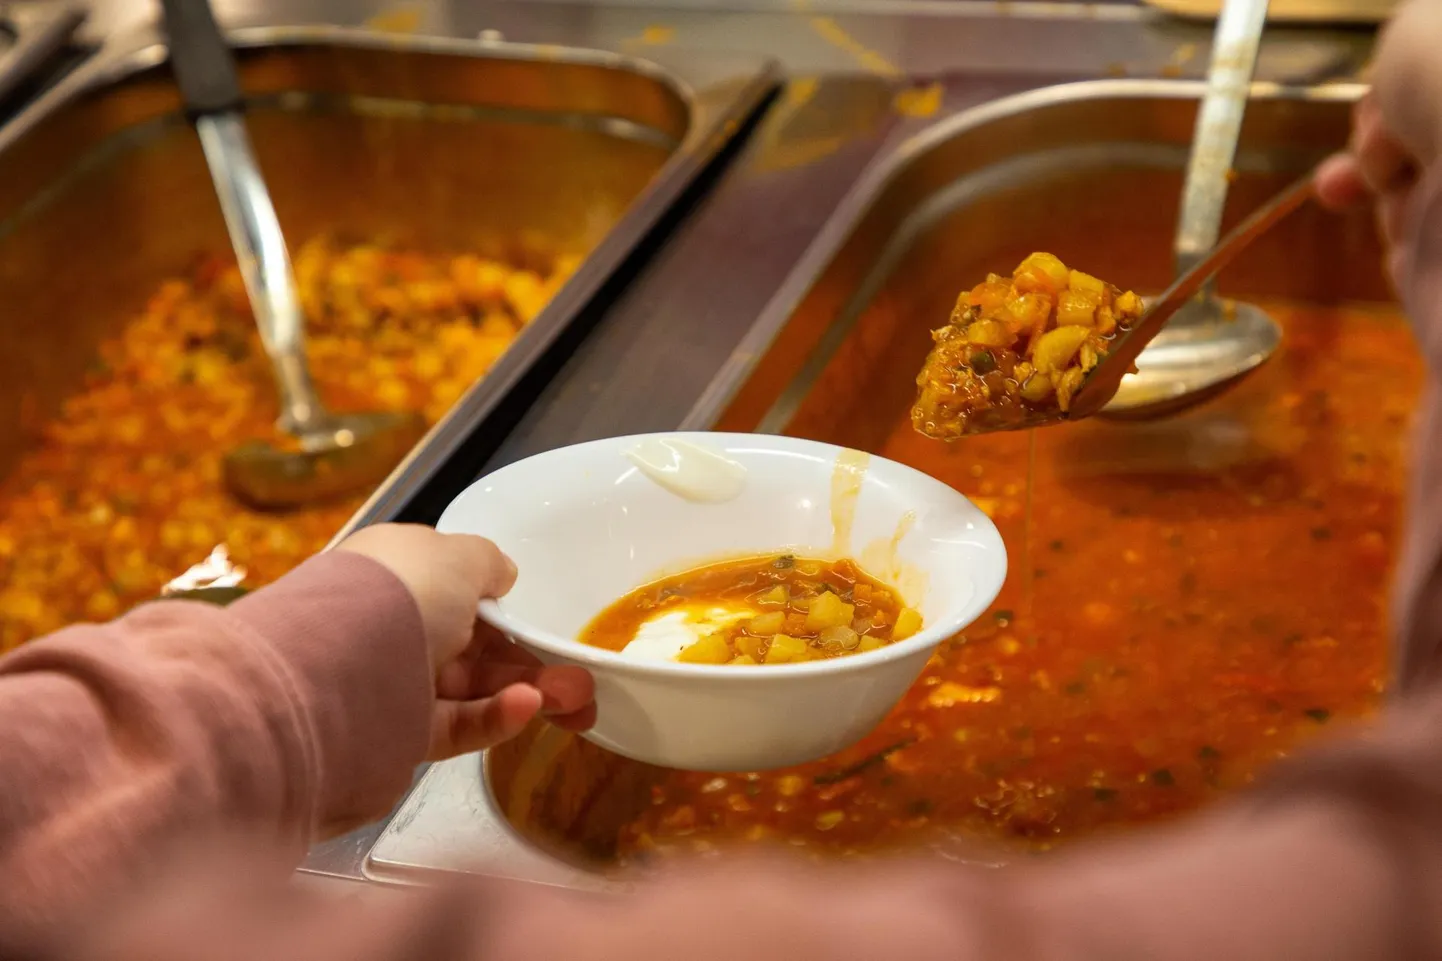 Toiduraiskamise vähendamiseks käivitas Baltic Restaurants Estonia AS võistluse, mille käigus selgitatakse välja toitu kõige vähem raiskav koolisöökla. 